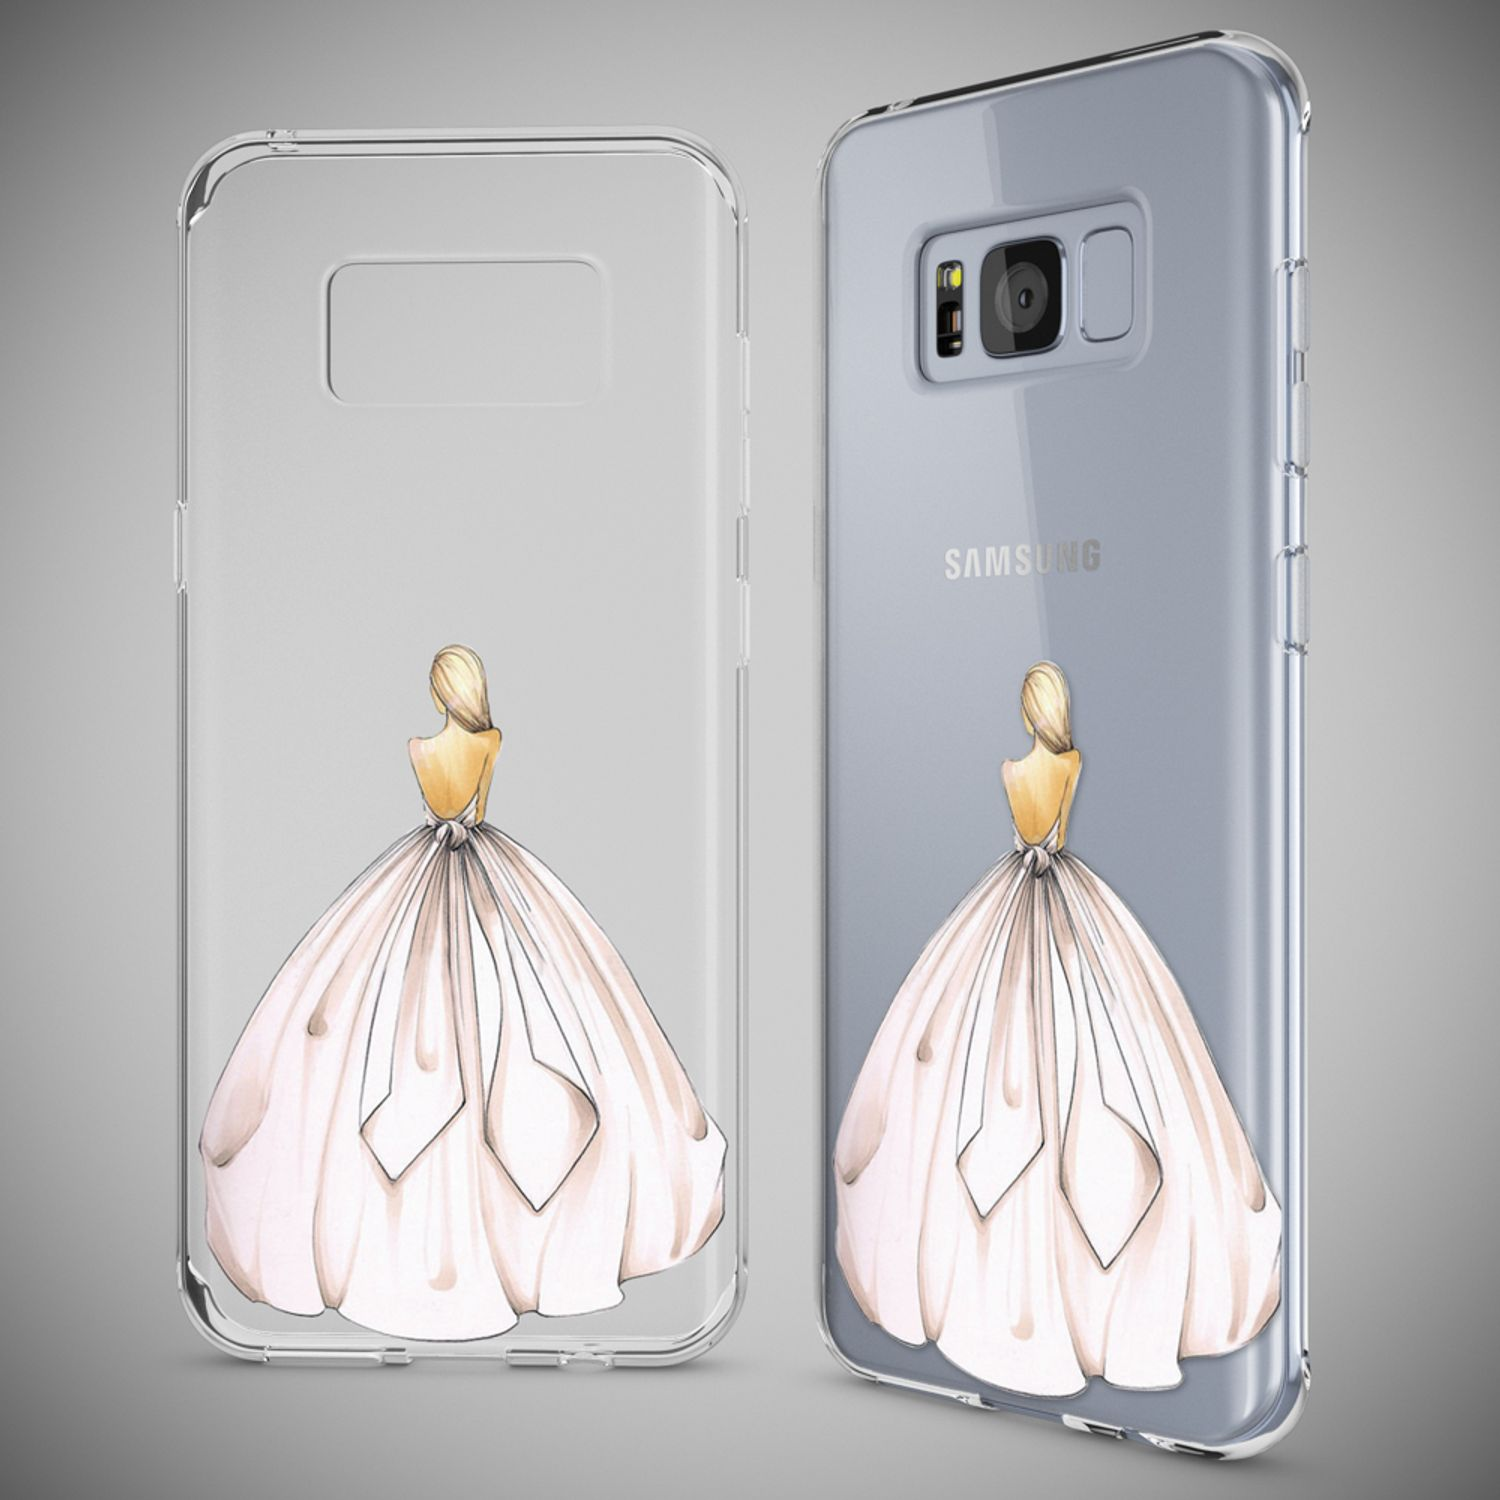 Samsung, S8, Motiv Galaxy Hülle, Backcover, NALIA Mehrfarbig Silikon